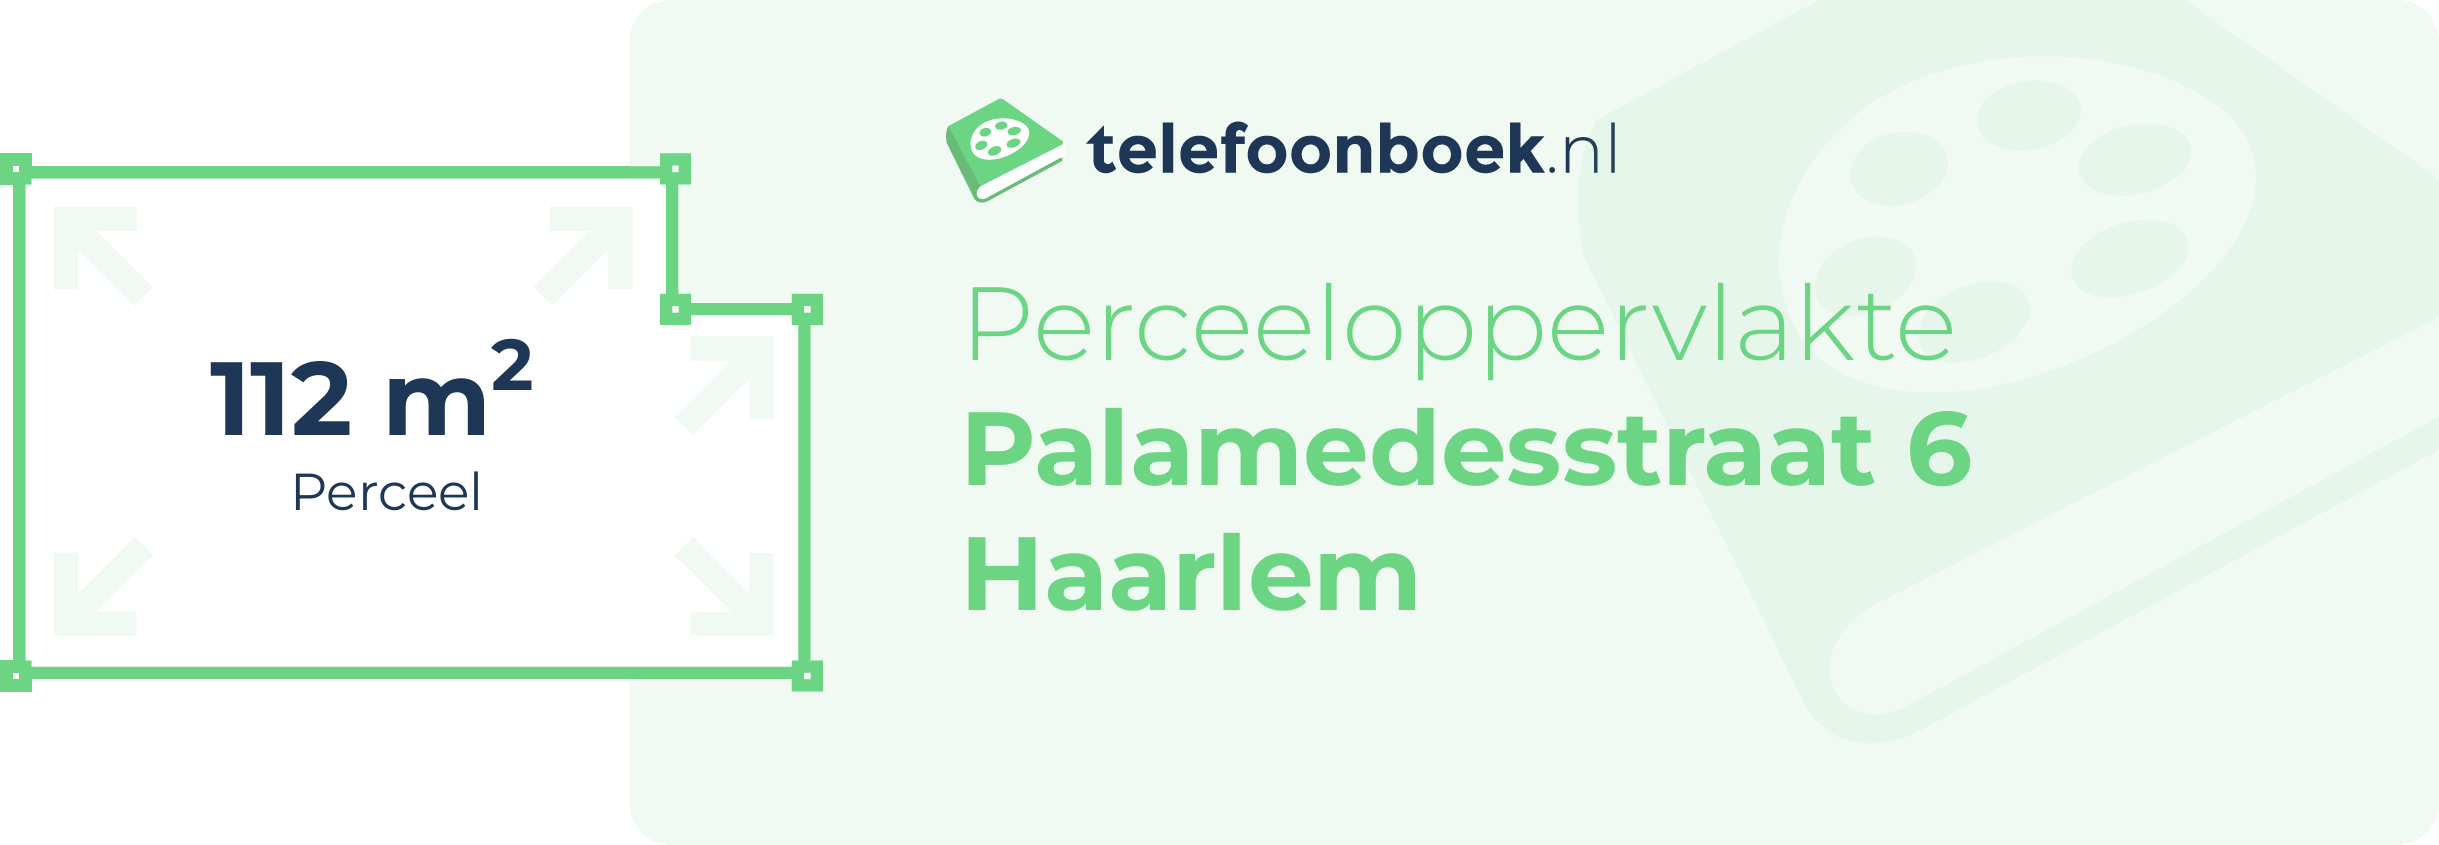 Perceeloppervlakte Palamedesstraat 6 Haarlem